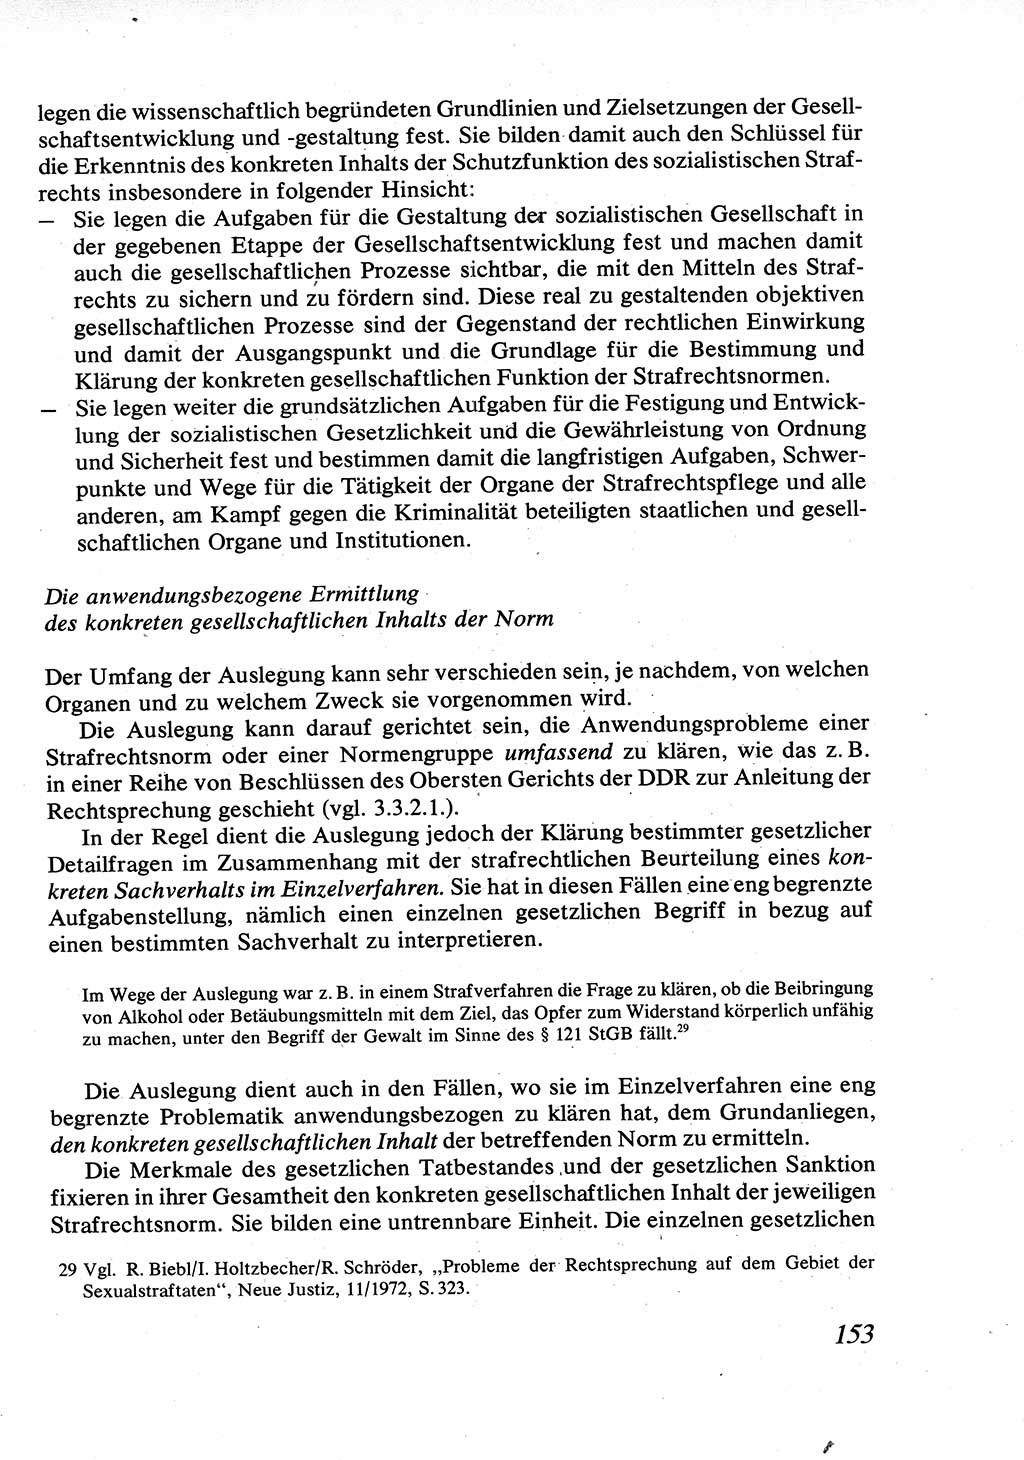 Strafrecht [Deutsche Demokratische Republik (DDR)], Allgemeiner Teil, Lehrbuch 1976, Seite 153 (Strafr. DDR AT Lb. 1976, S. 153)